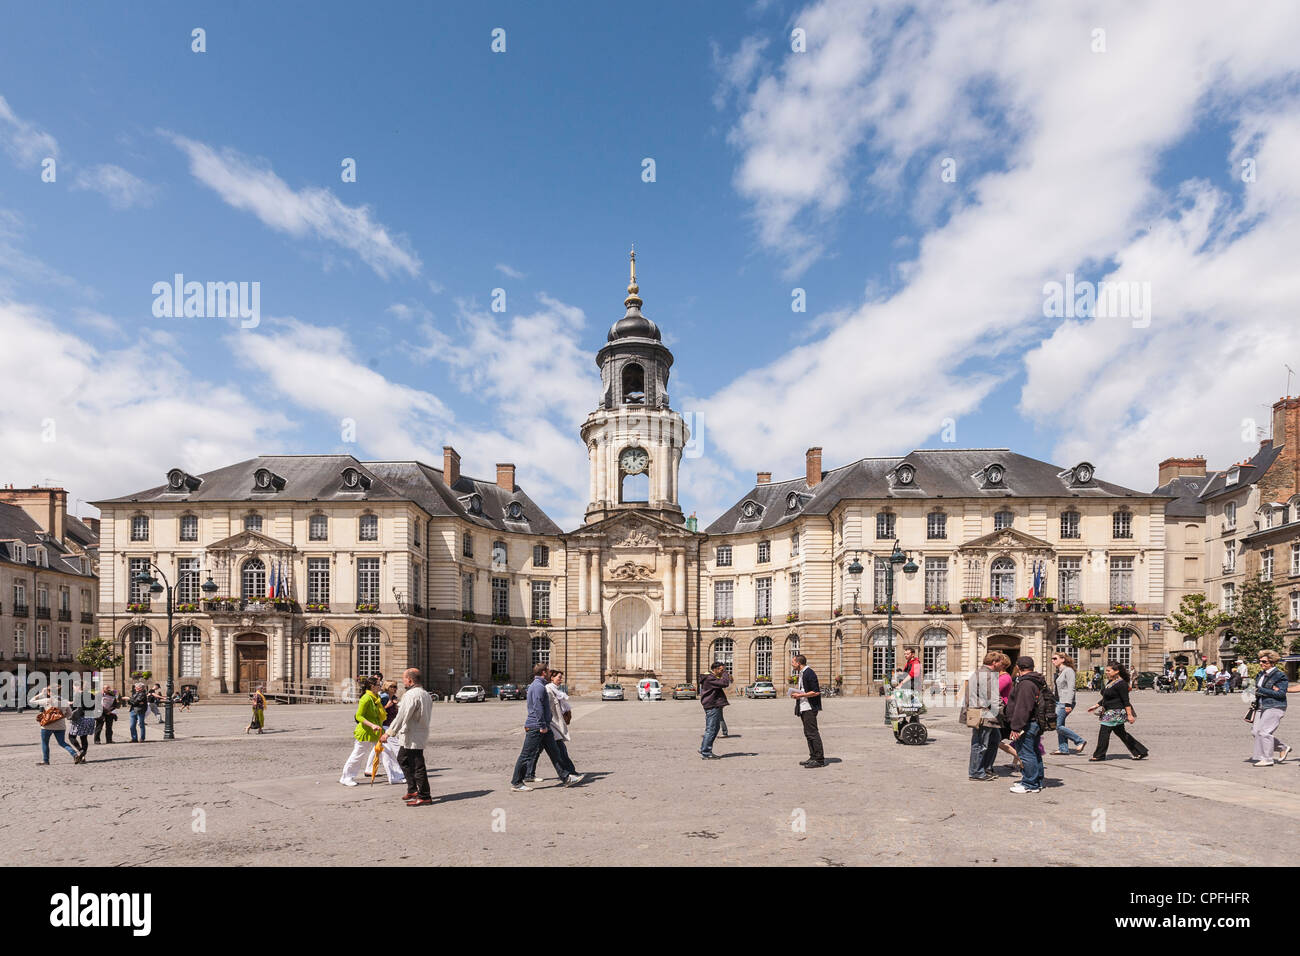 Place de la Mairie, Rennes, Brittany, France. Stock Photo